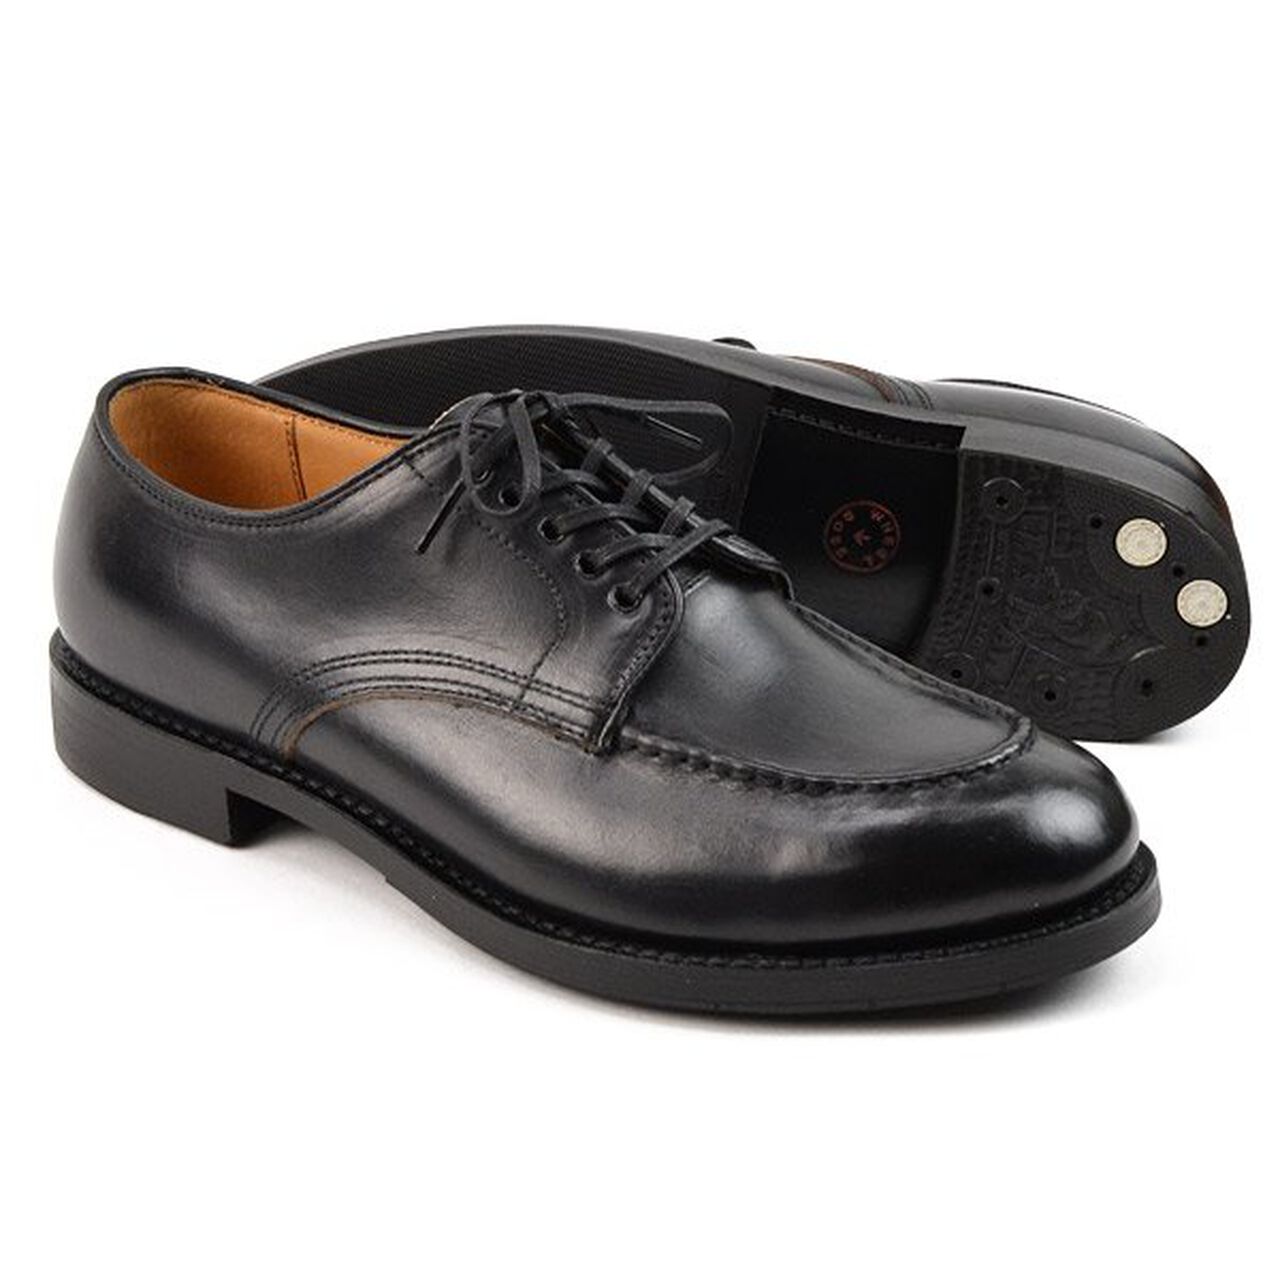 15078 Heavy Stitching Moc Toe Leather Shoes,Black, large image number 0